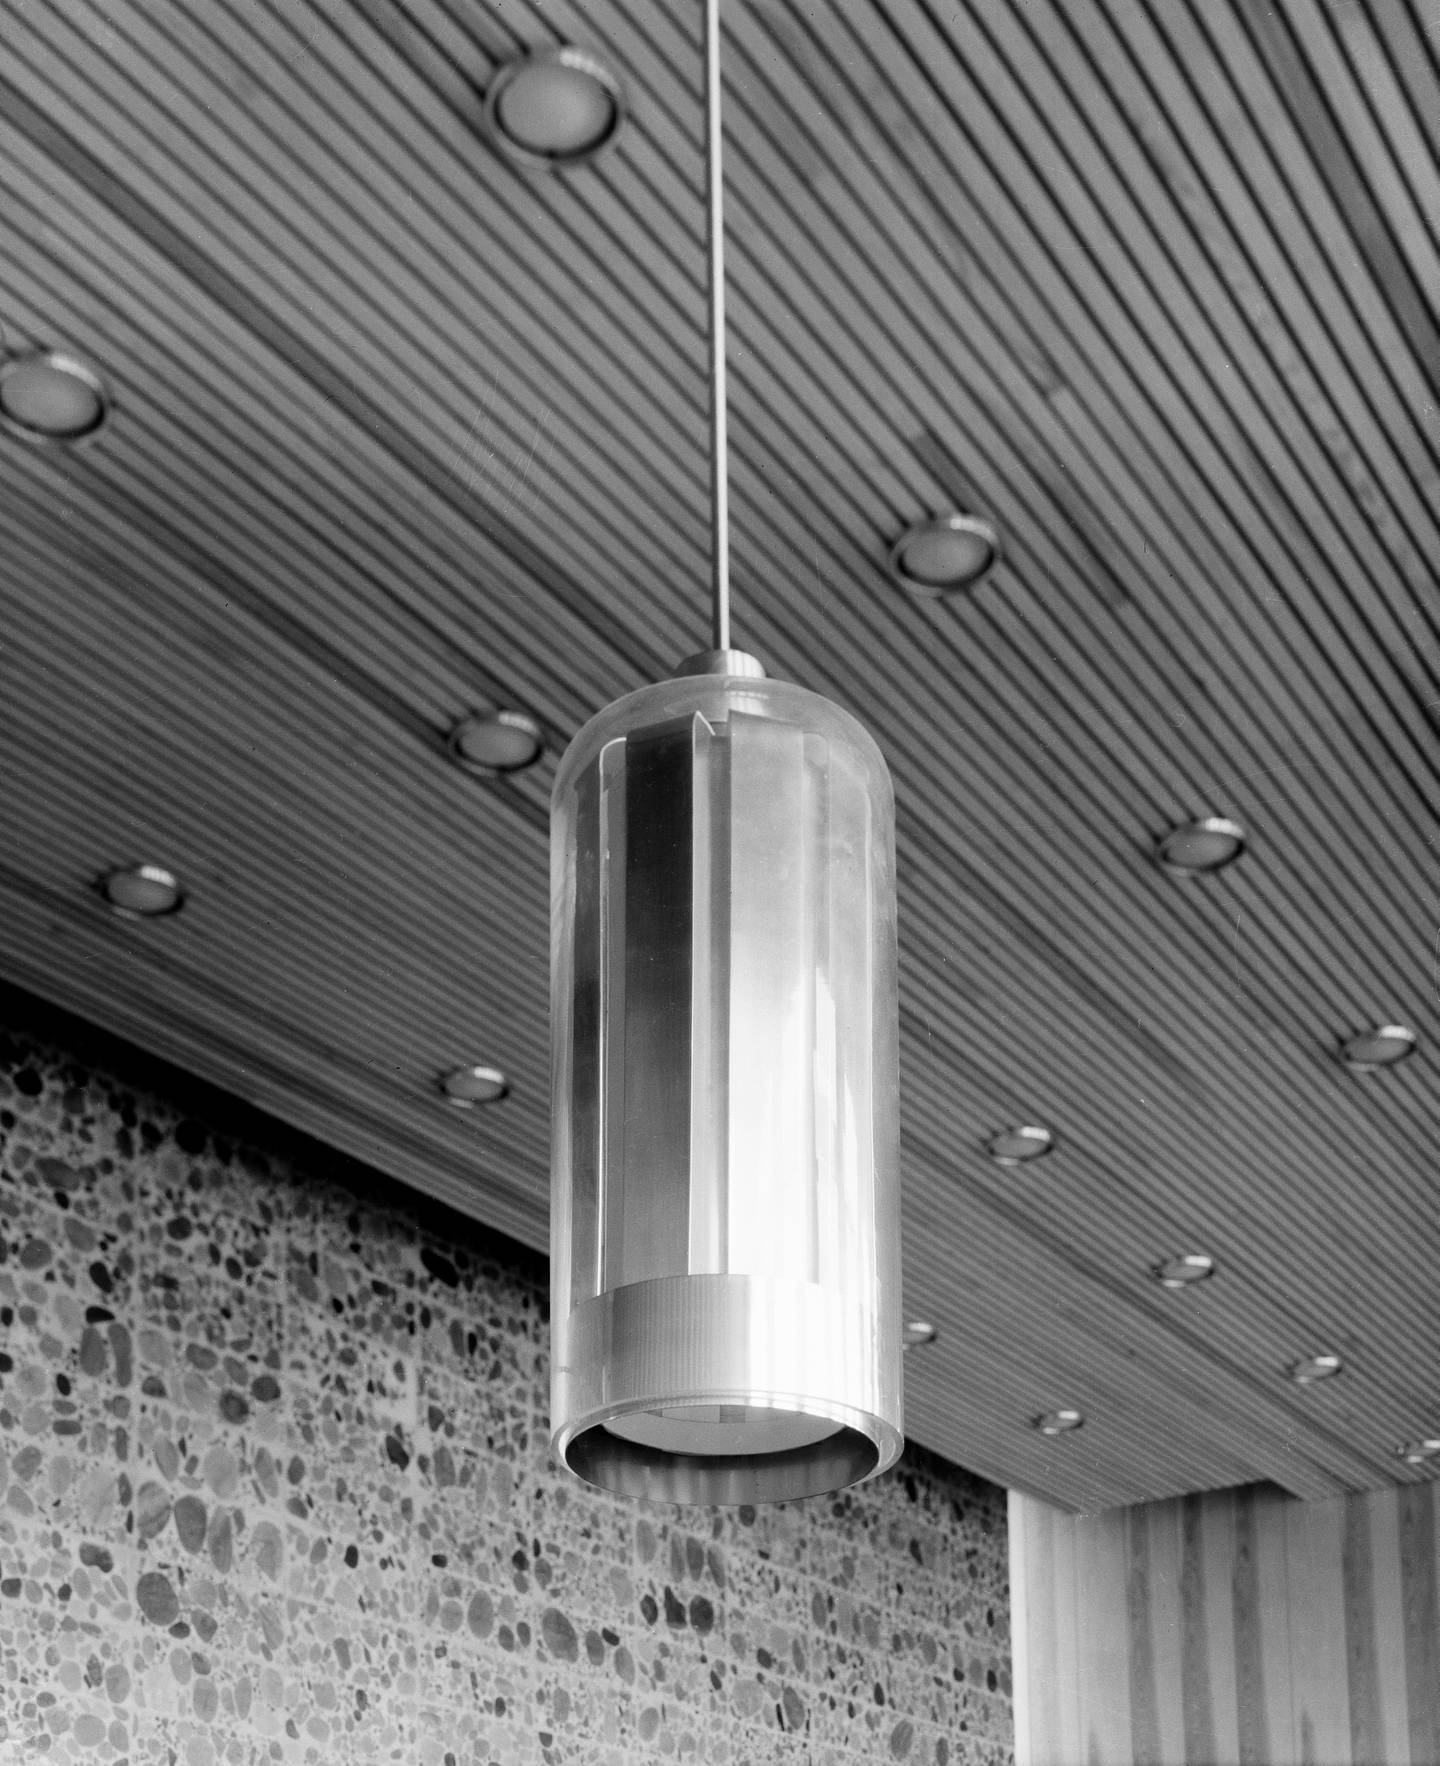 Detaljbilde av lamper. Fra Høyblokka i Regjeringskvartalet, Statsrådsalen i 16. etasje.
Påskrift på film; (Sønnico 110), 36

 *** Local Caption *** Viksjø, Erling, arkitekt (1910-1971)